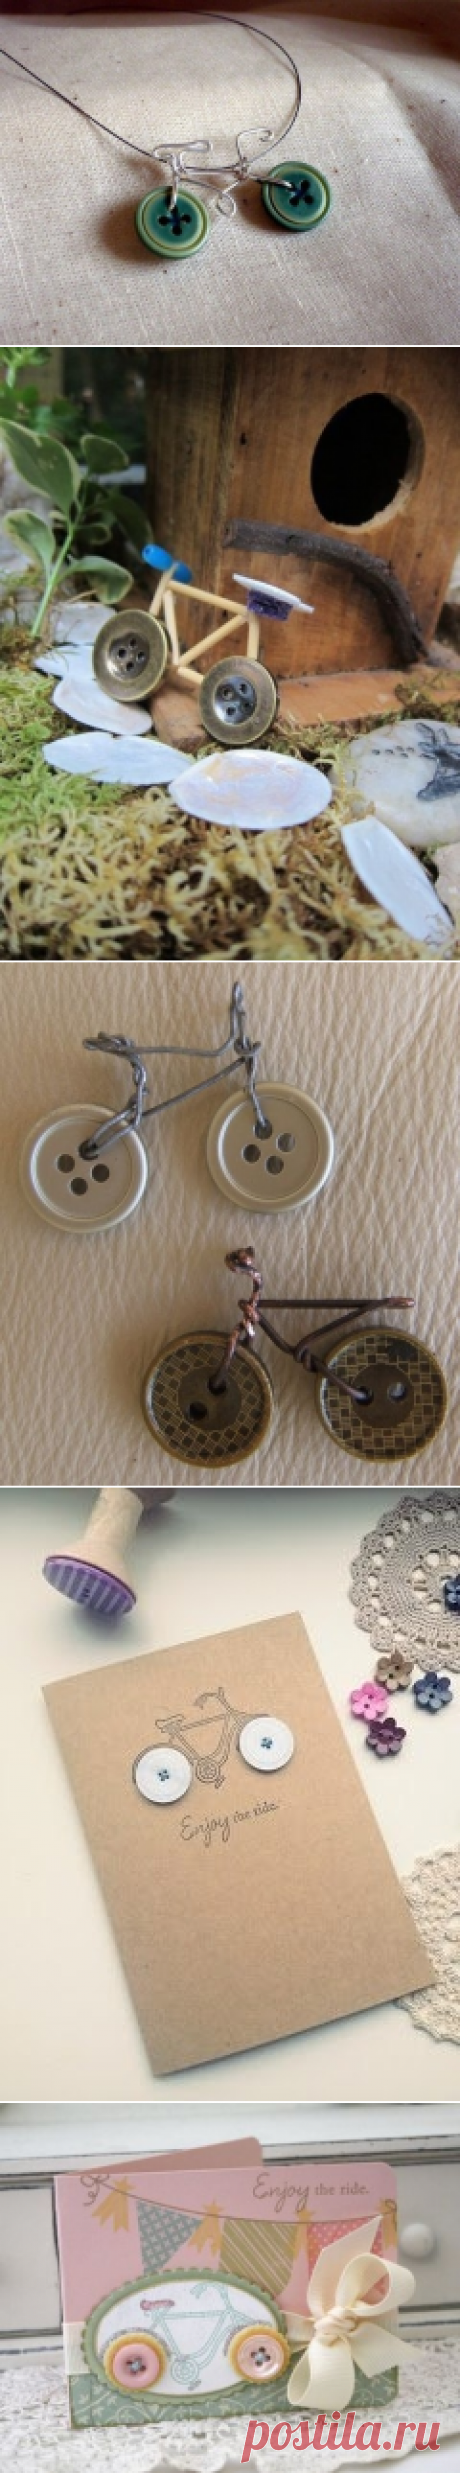 Велосипед из пуговиц и идеи его применения